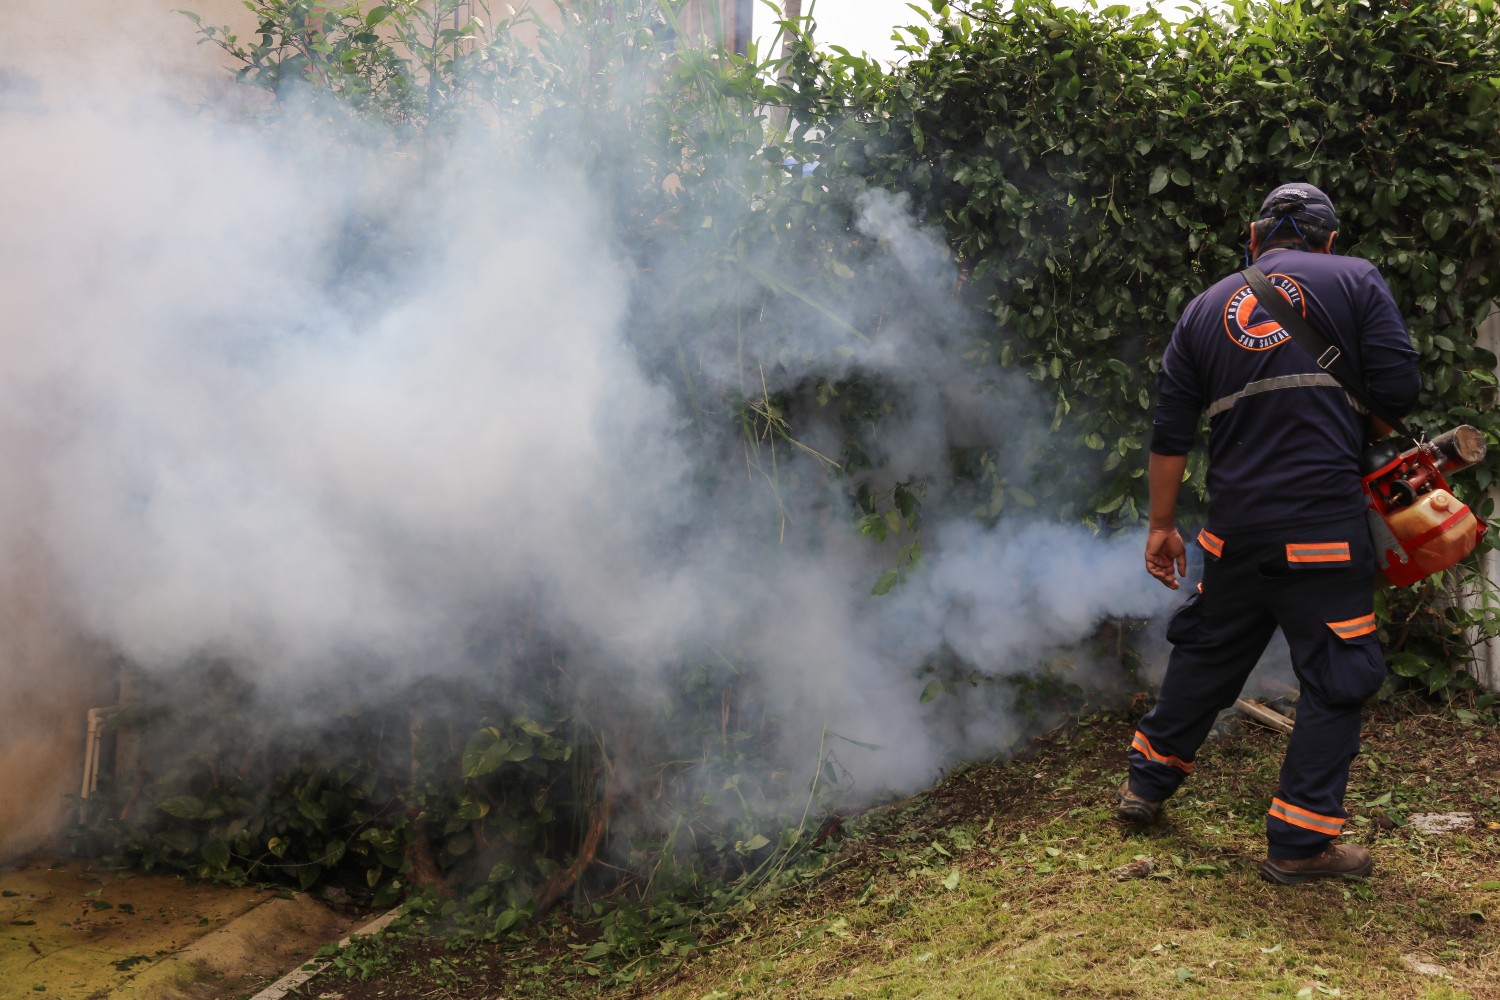 Fumigatie-inspanningen om dengue-koorts te bestrijden.